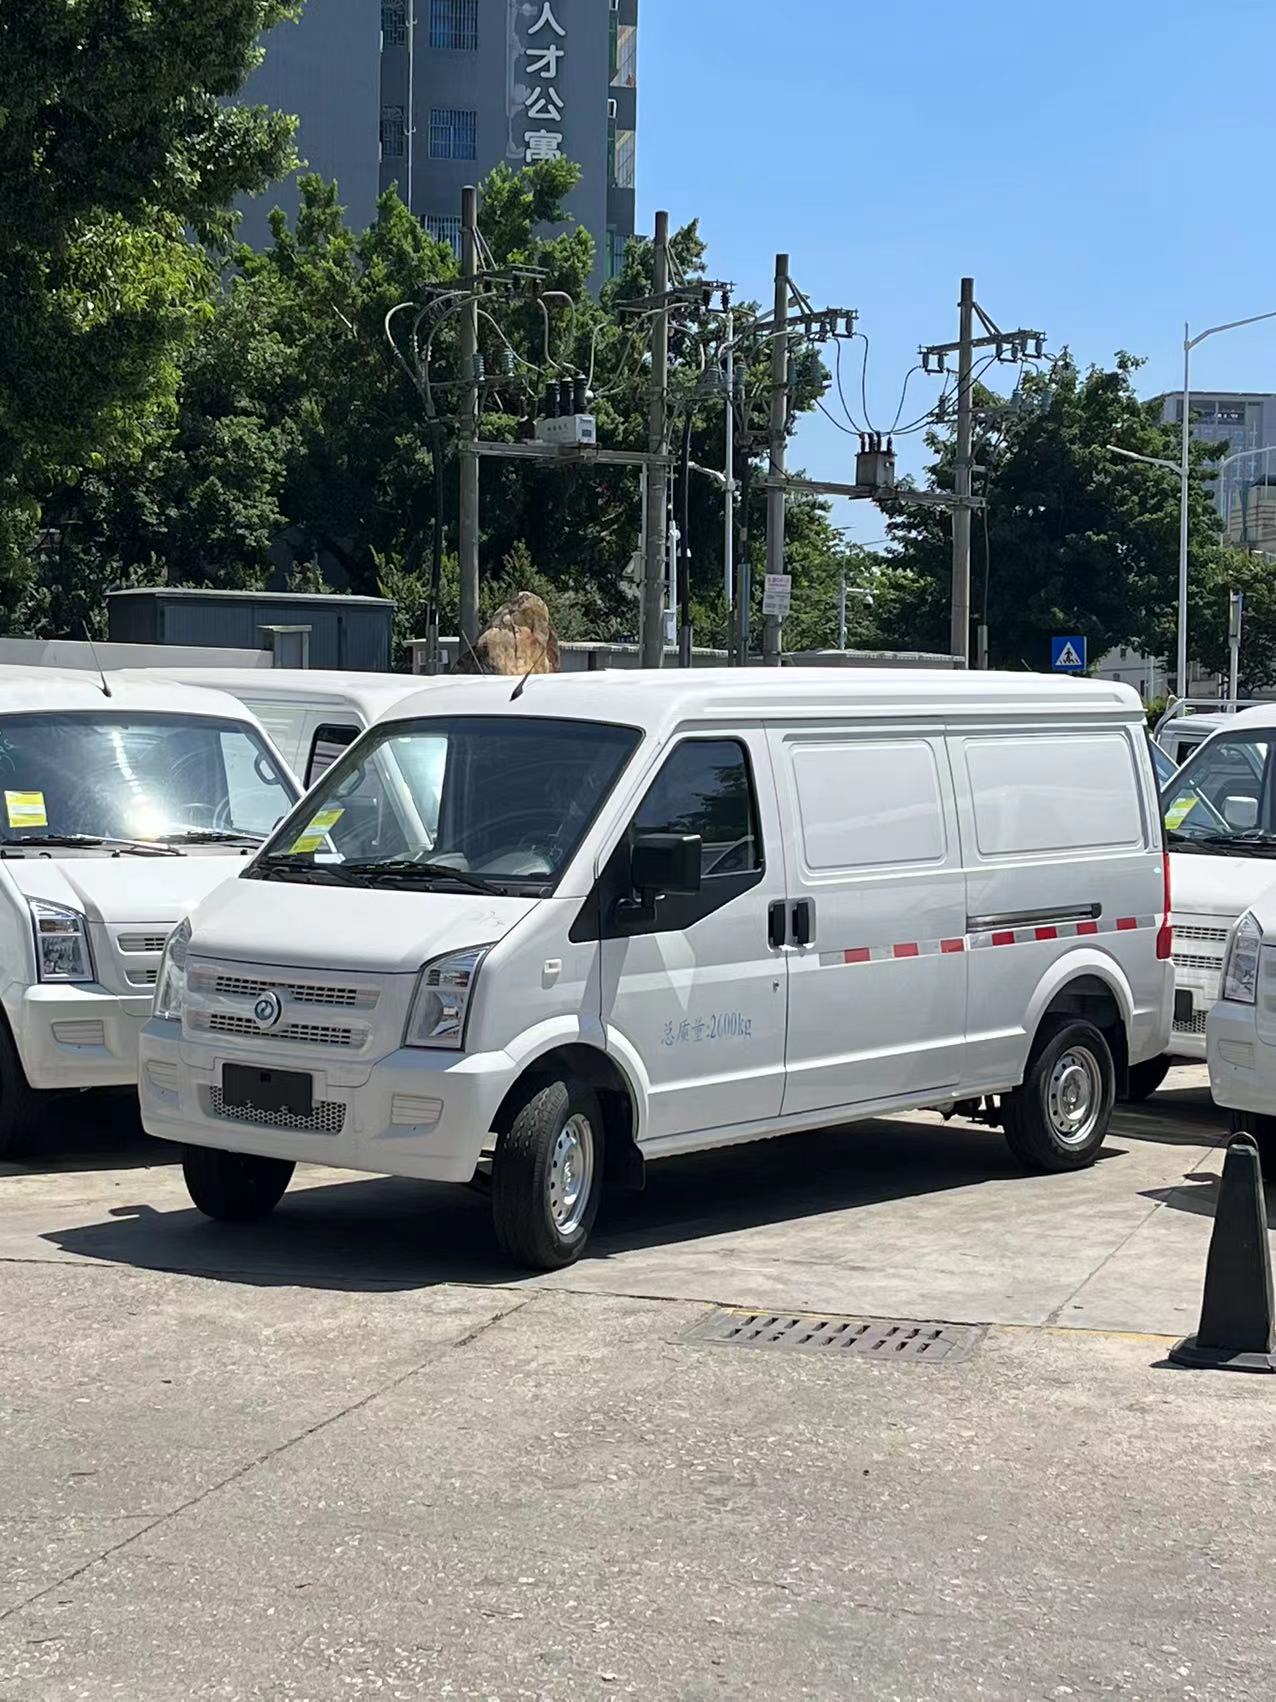 EC35电动封闭厢货深圳市火热促销中 让利高达4万